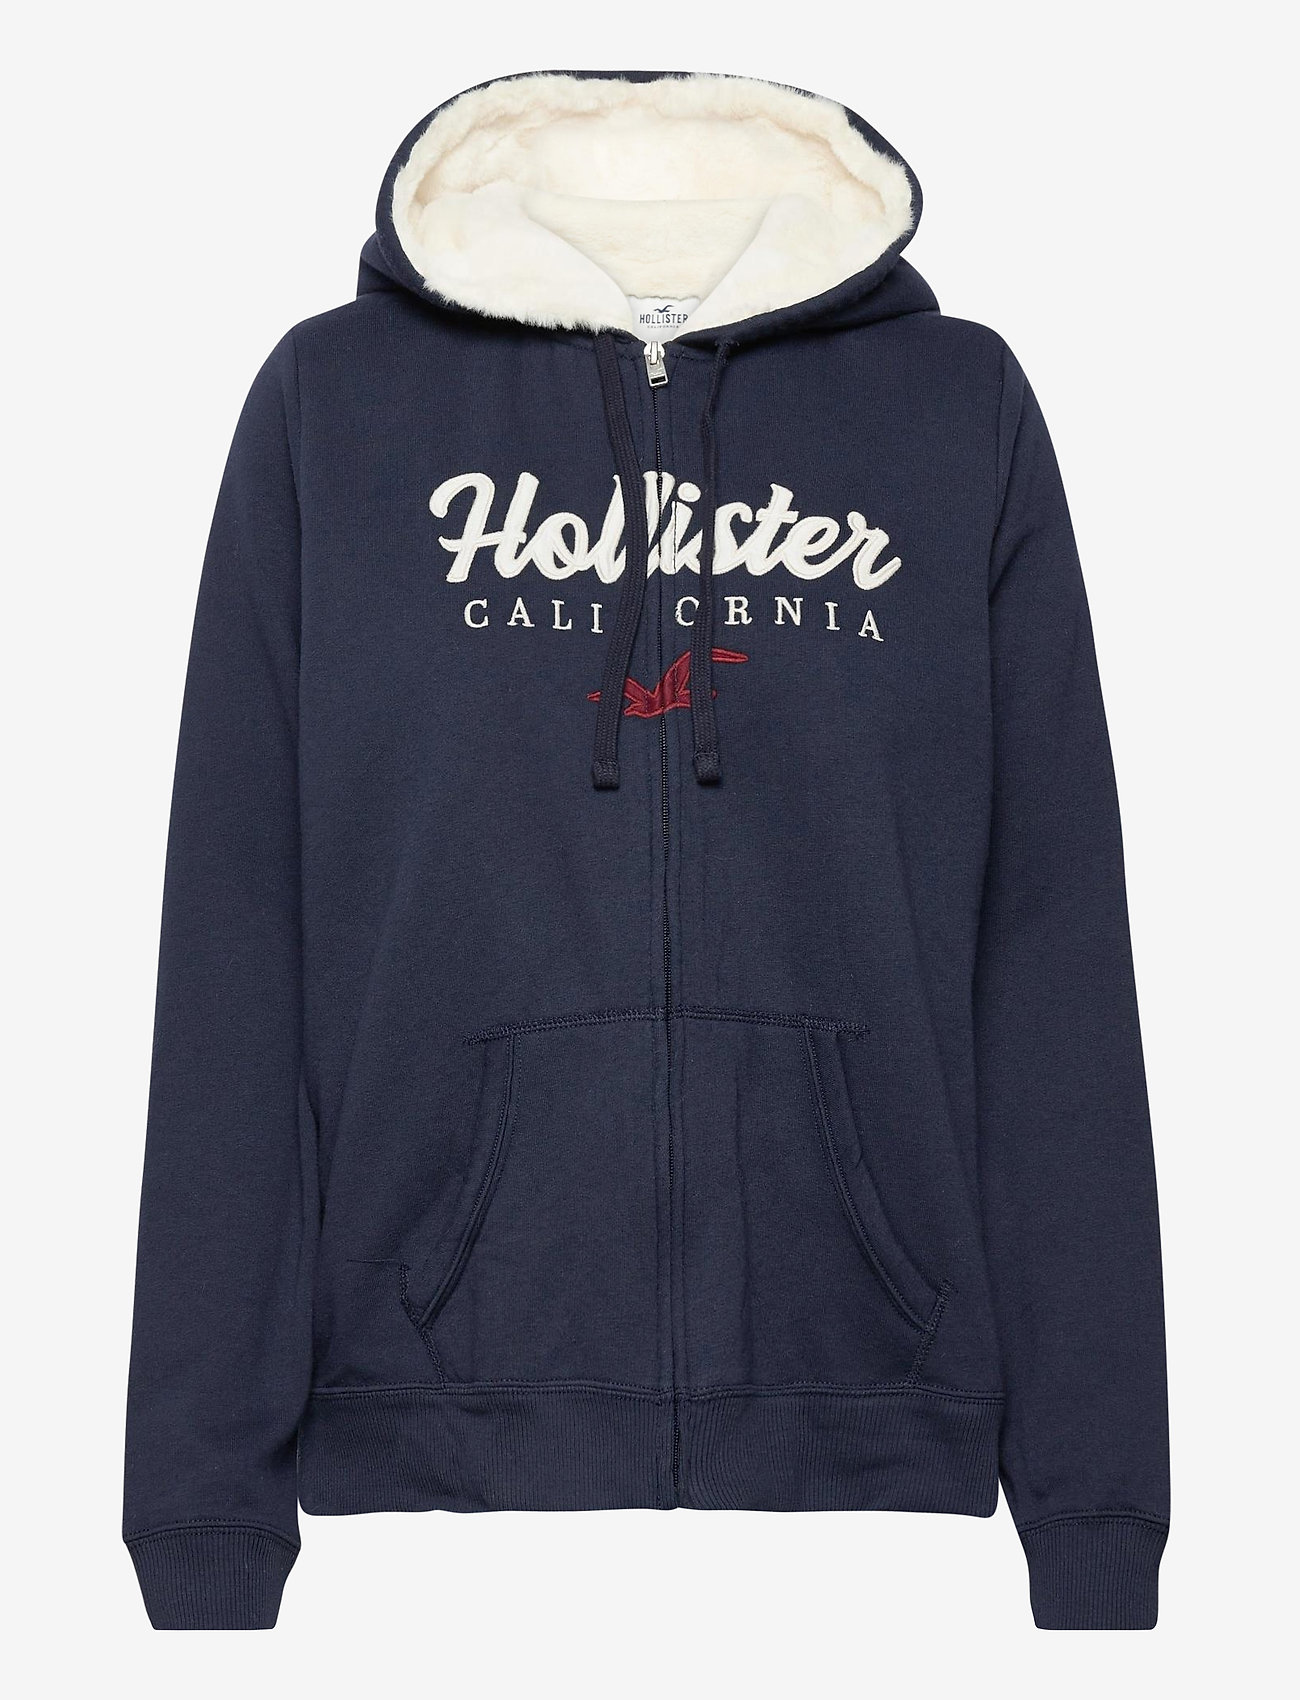 hollister hoodie sherpa